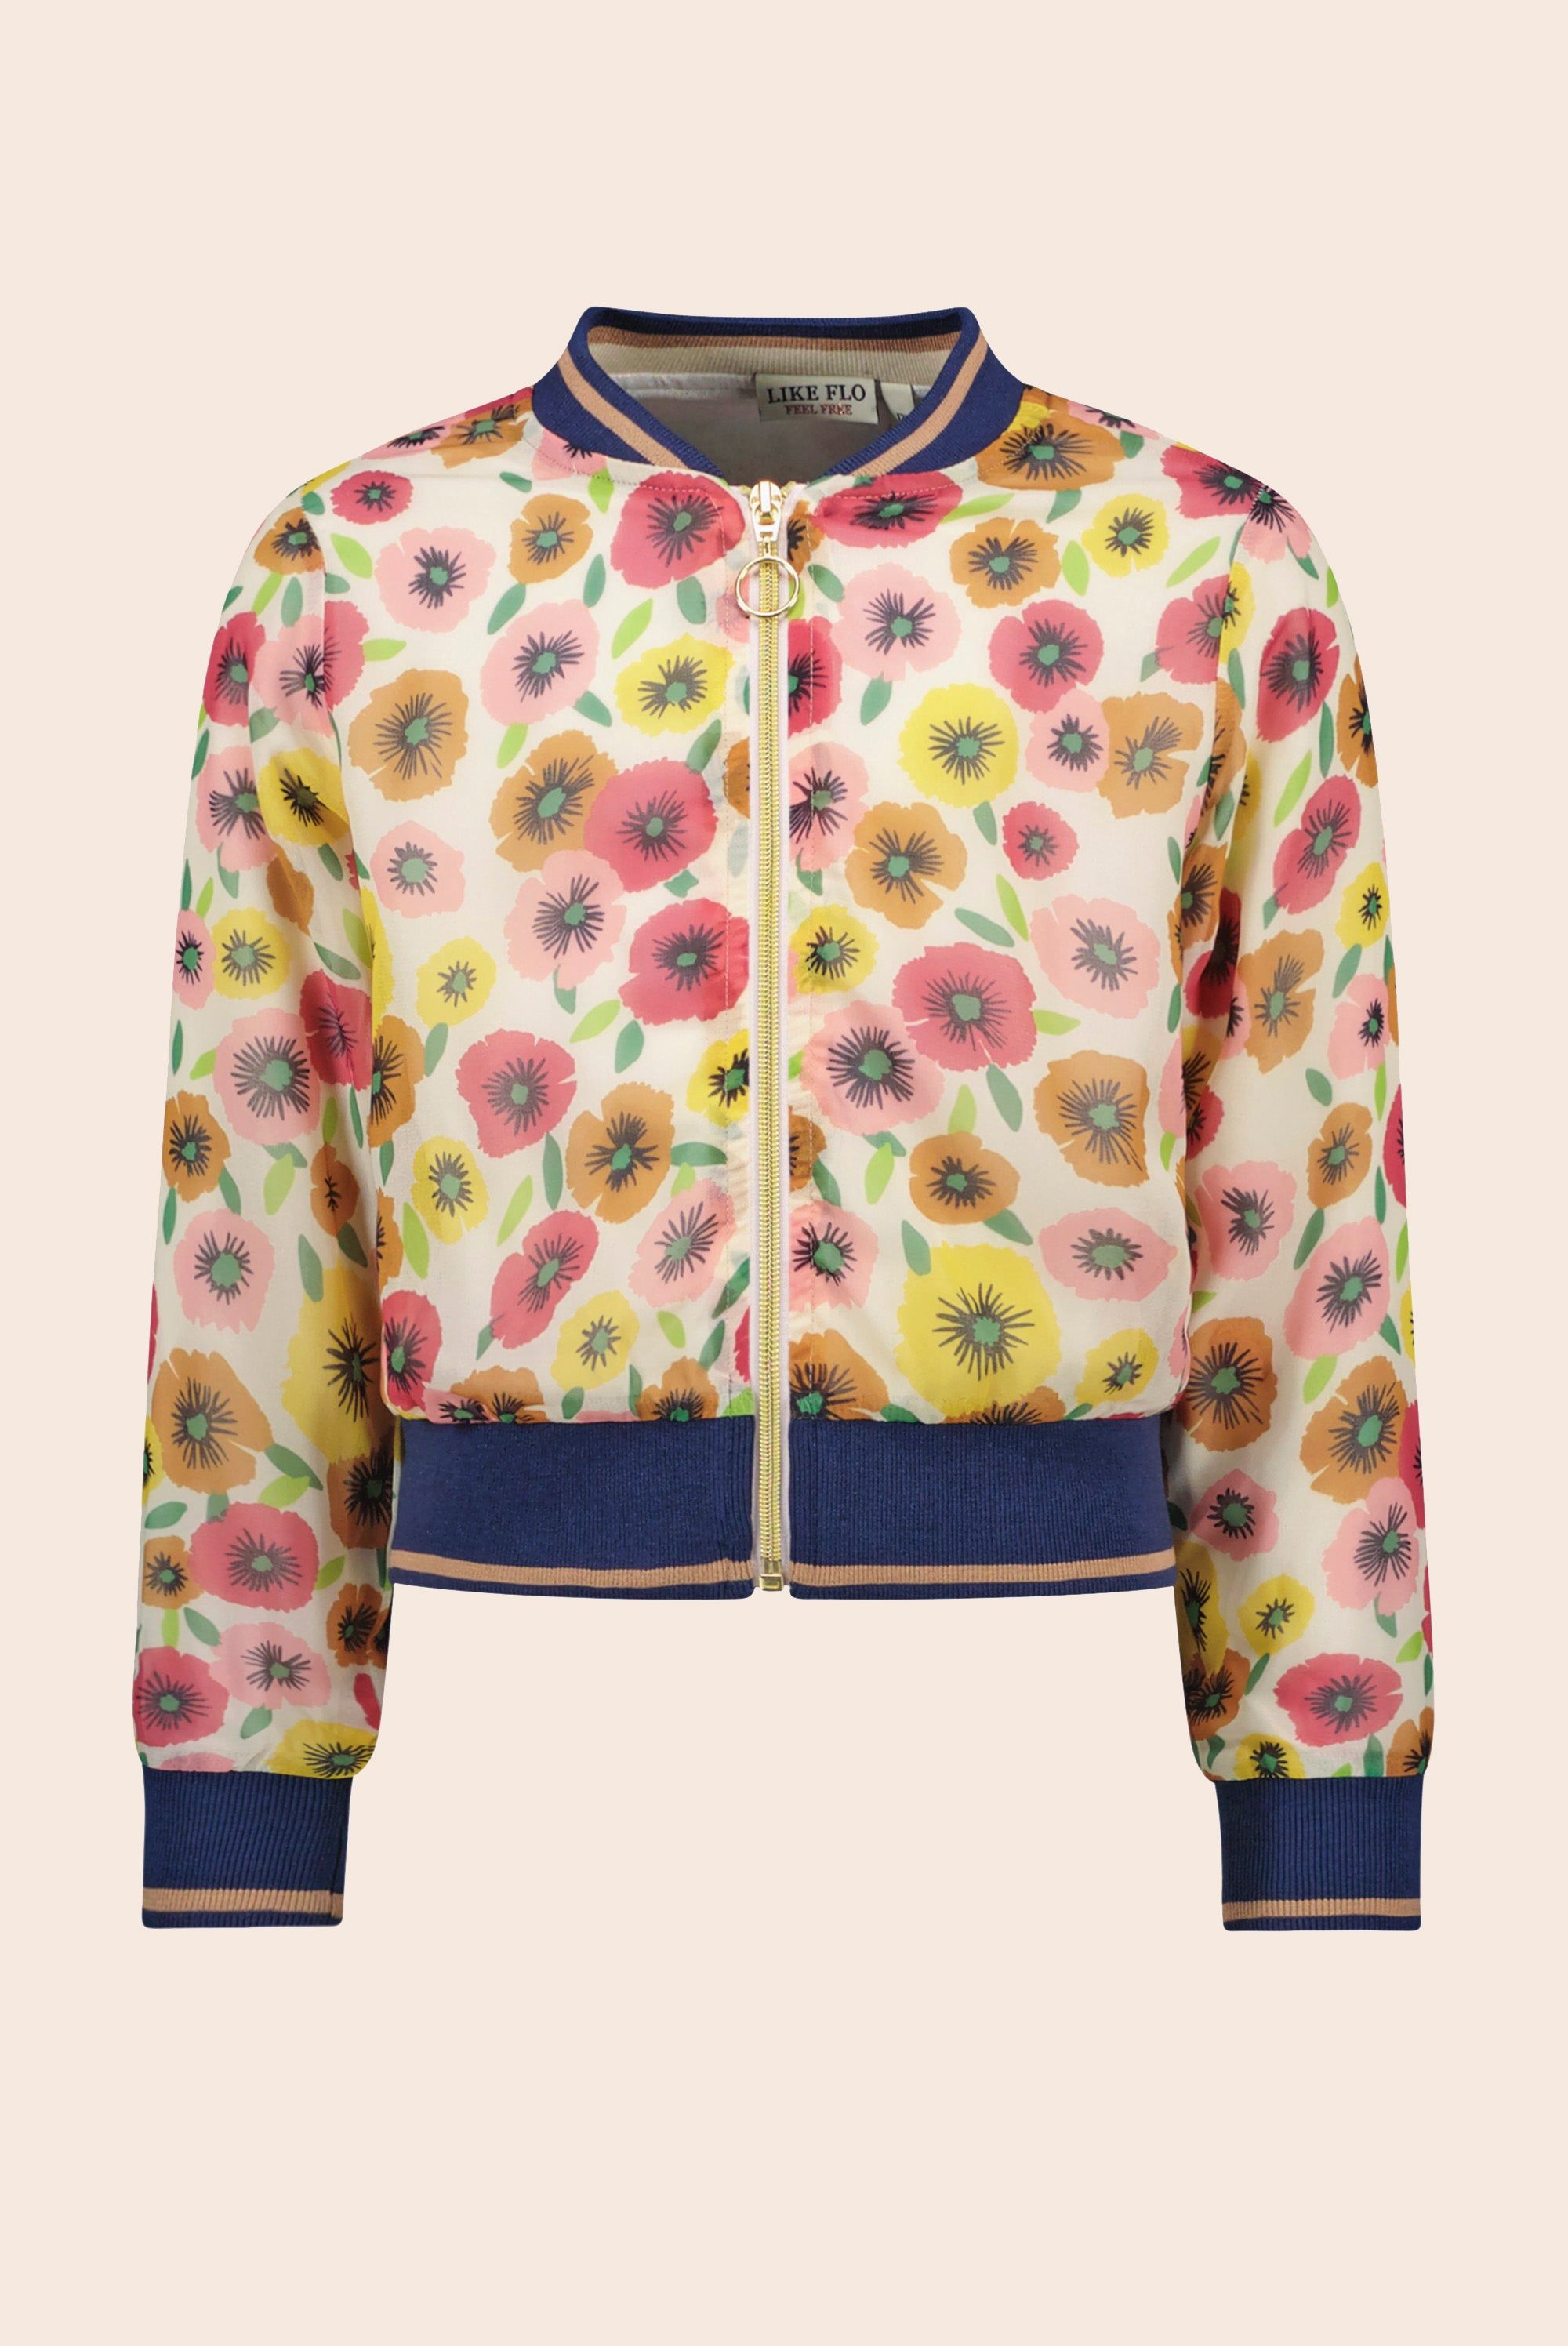 Jas Flo girls chiffon flower baseball jacket